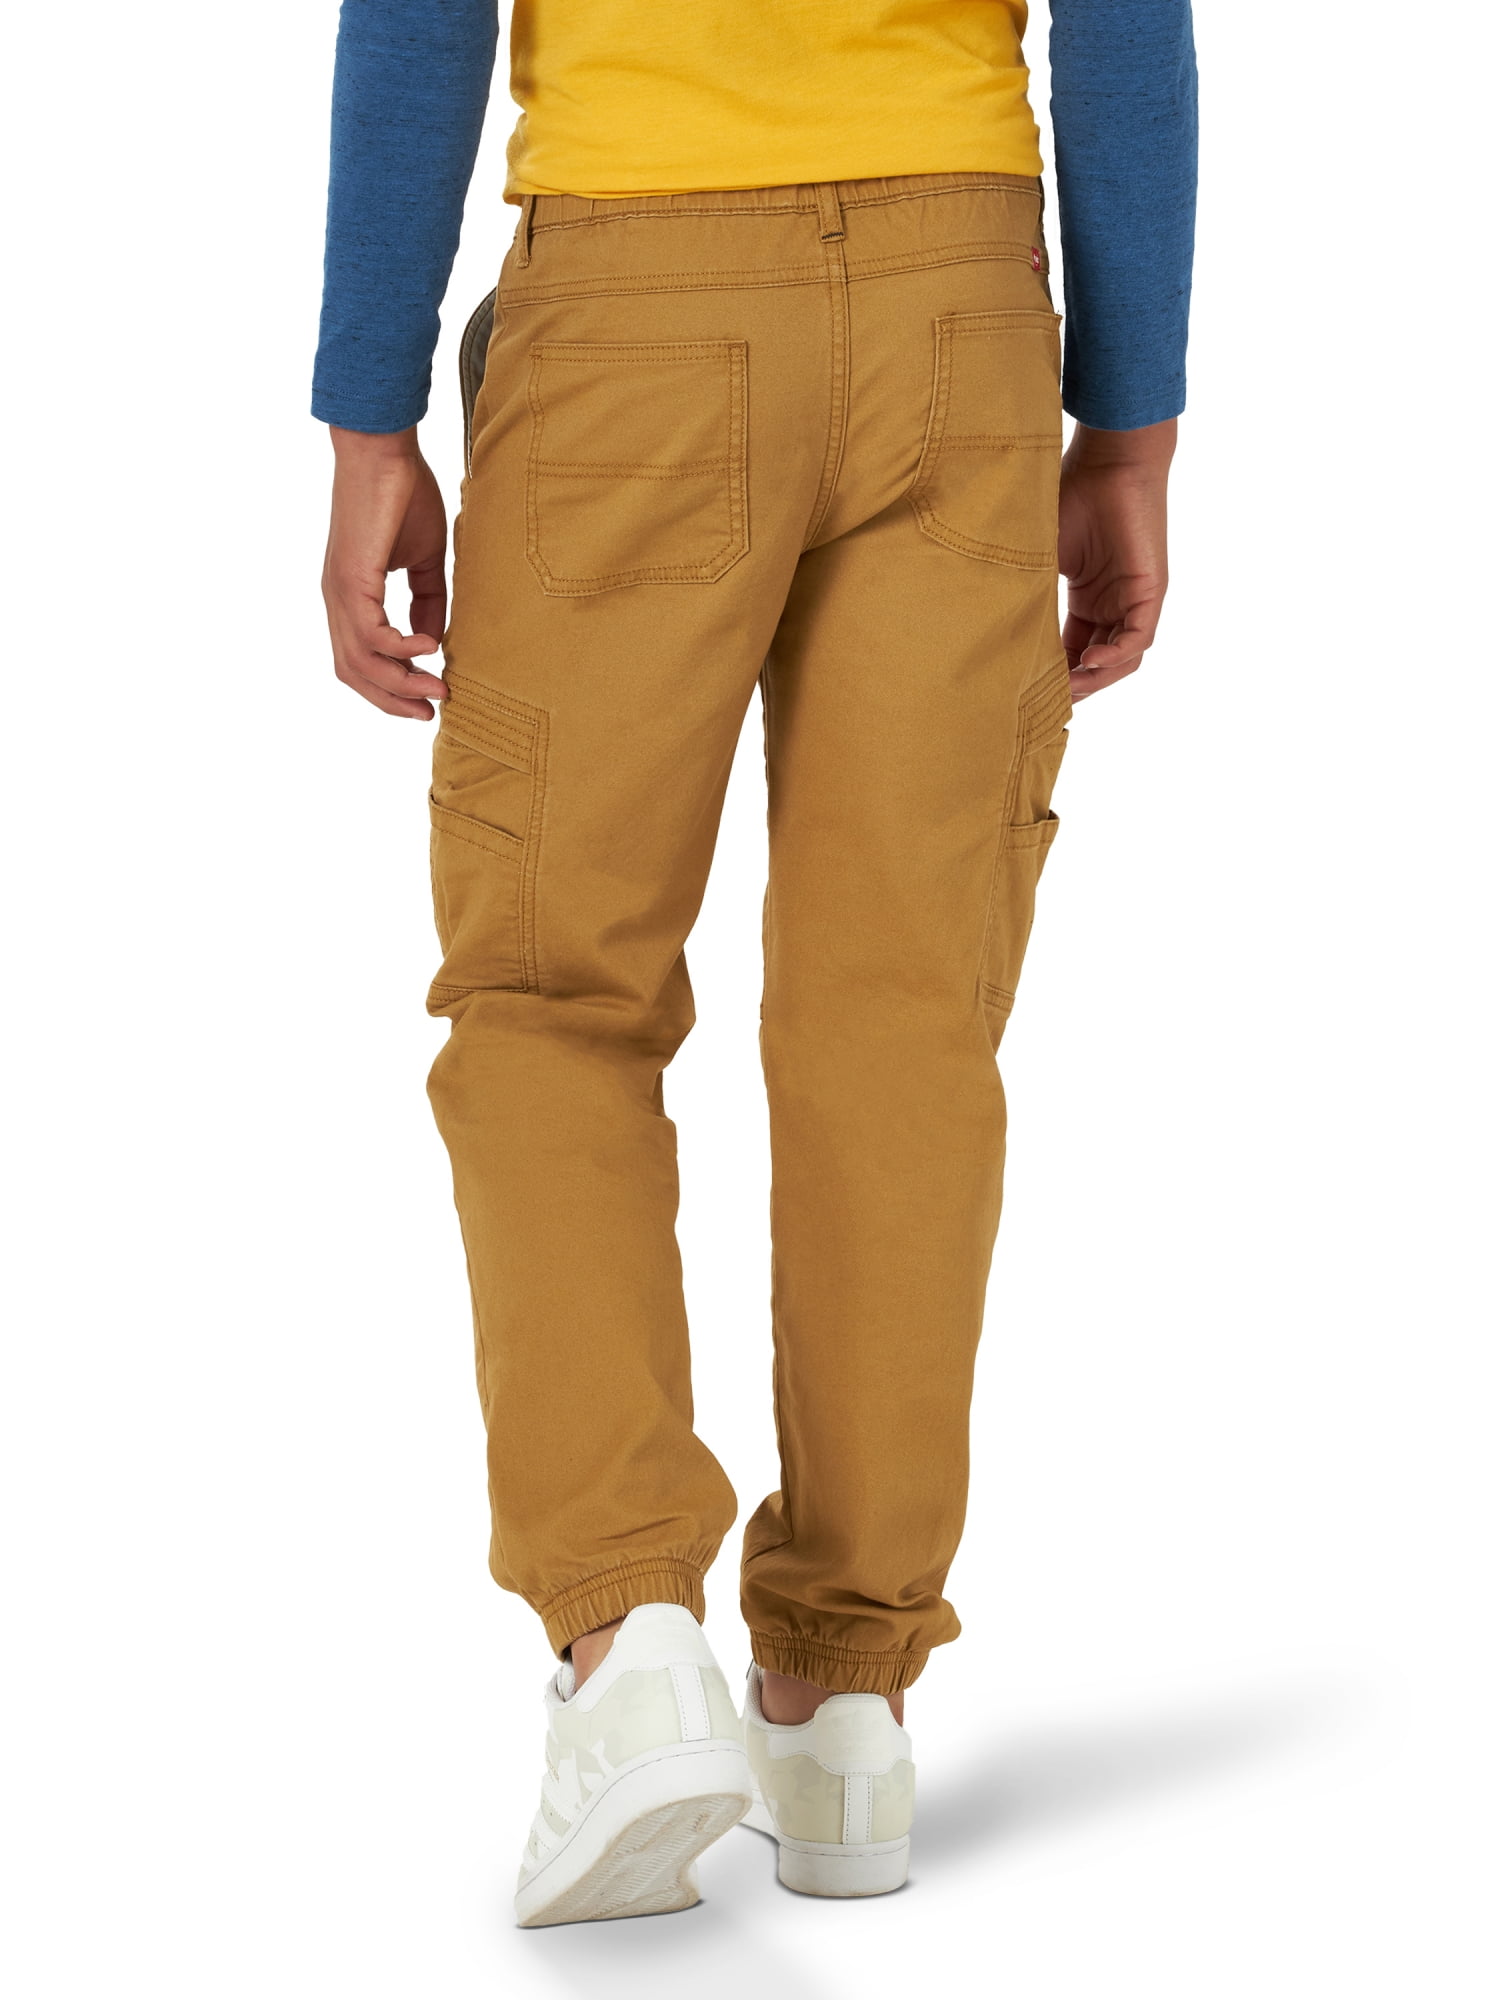 Wrangler Boy's Gamer Cargo Pants, Sizes 4-16, Slim & Husky 